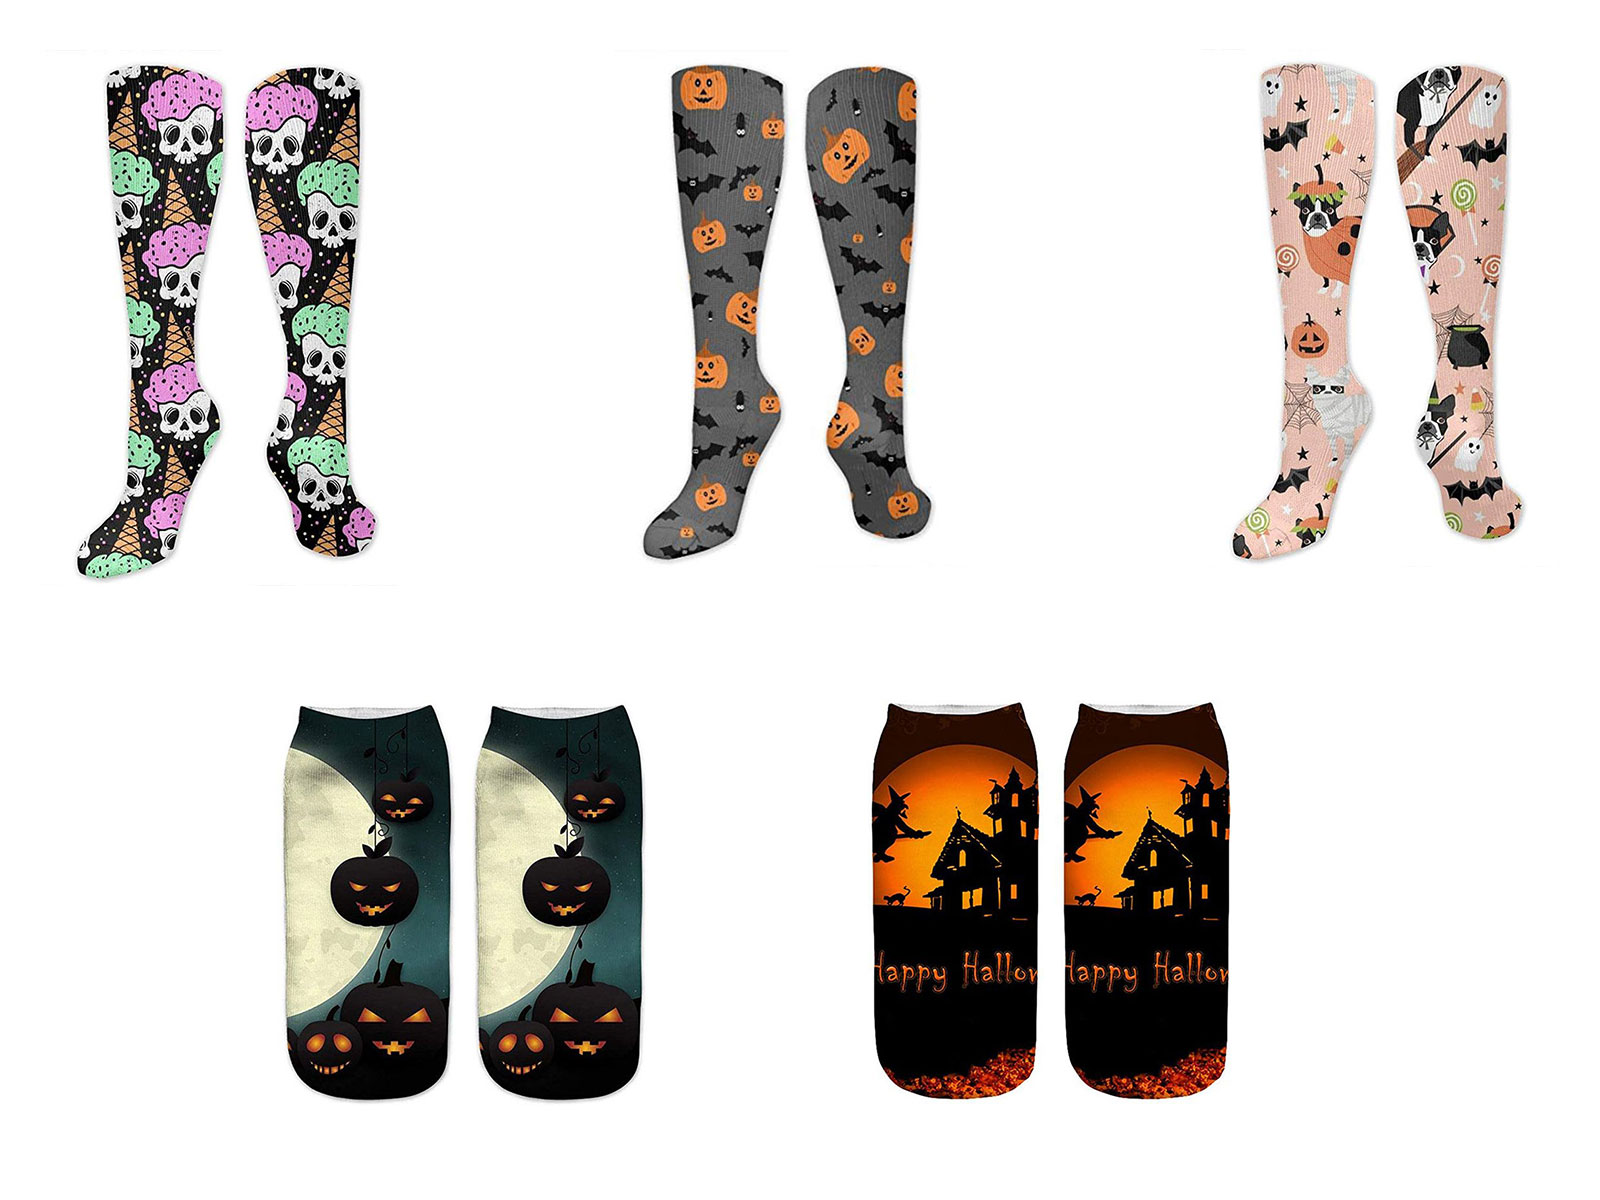 12-Halloween-Themed-Socks-Stockings-For-Girls-Women-2019-F